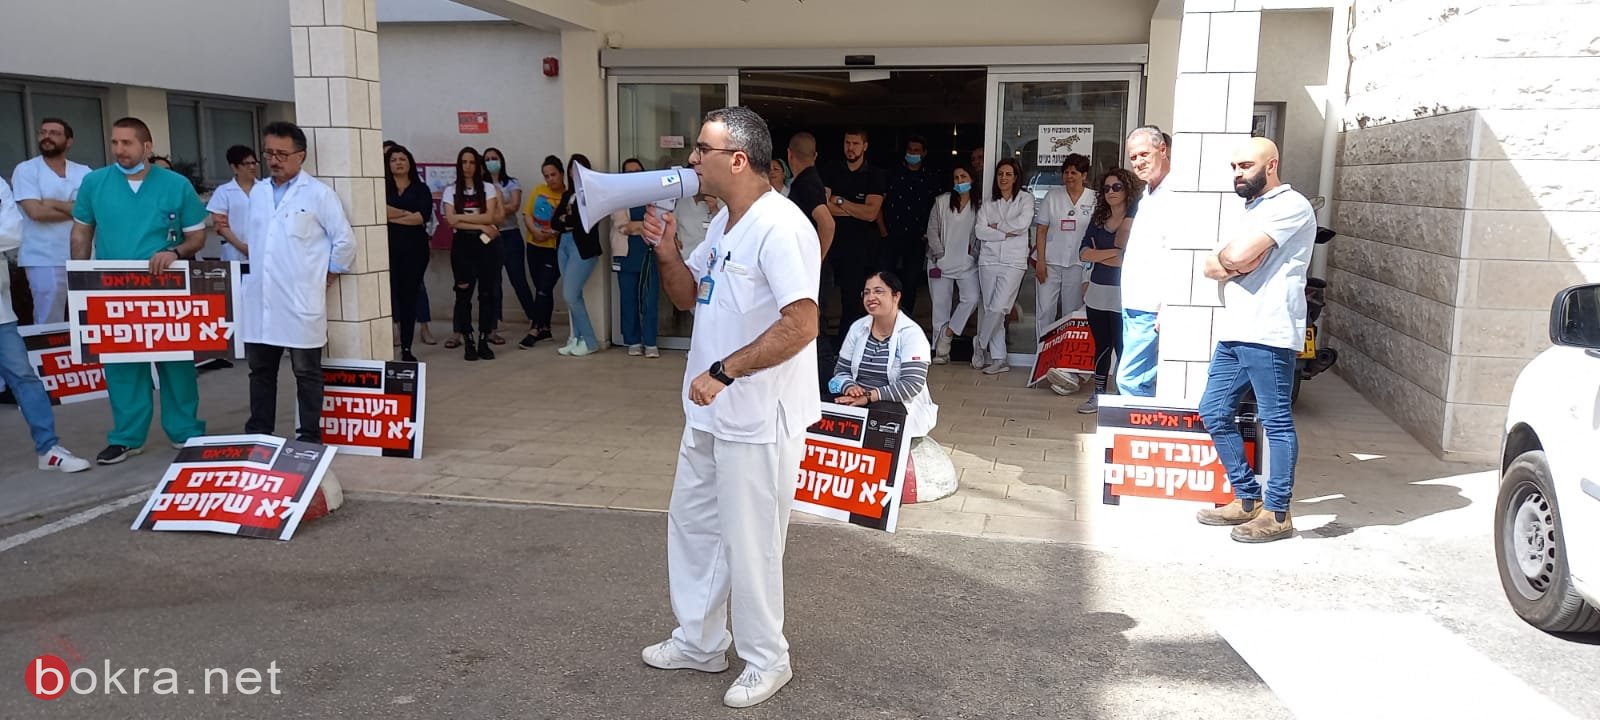 بعد مطالبات بتحسين ظروف العمل - إضراب عاملي المستشفى الفرنسي في يومه الثامن-8